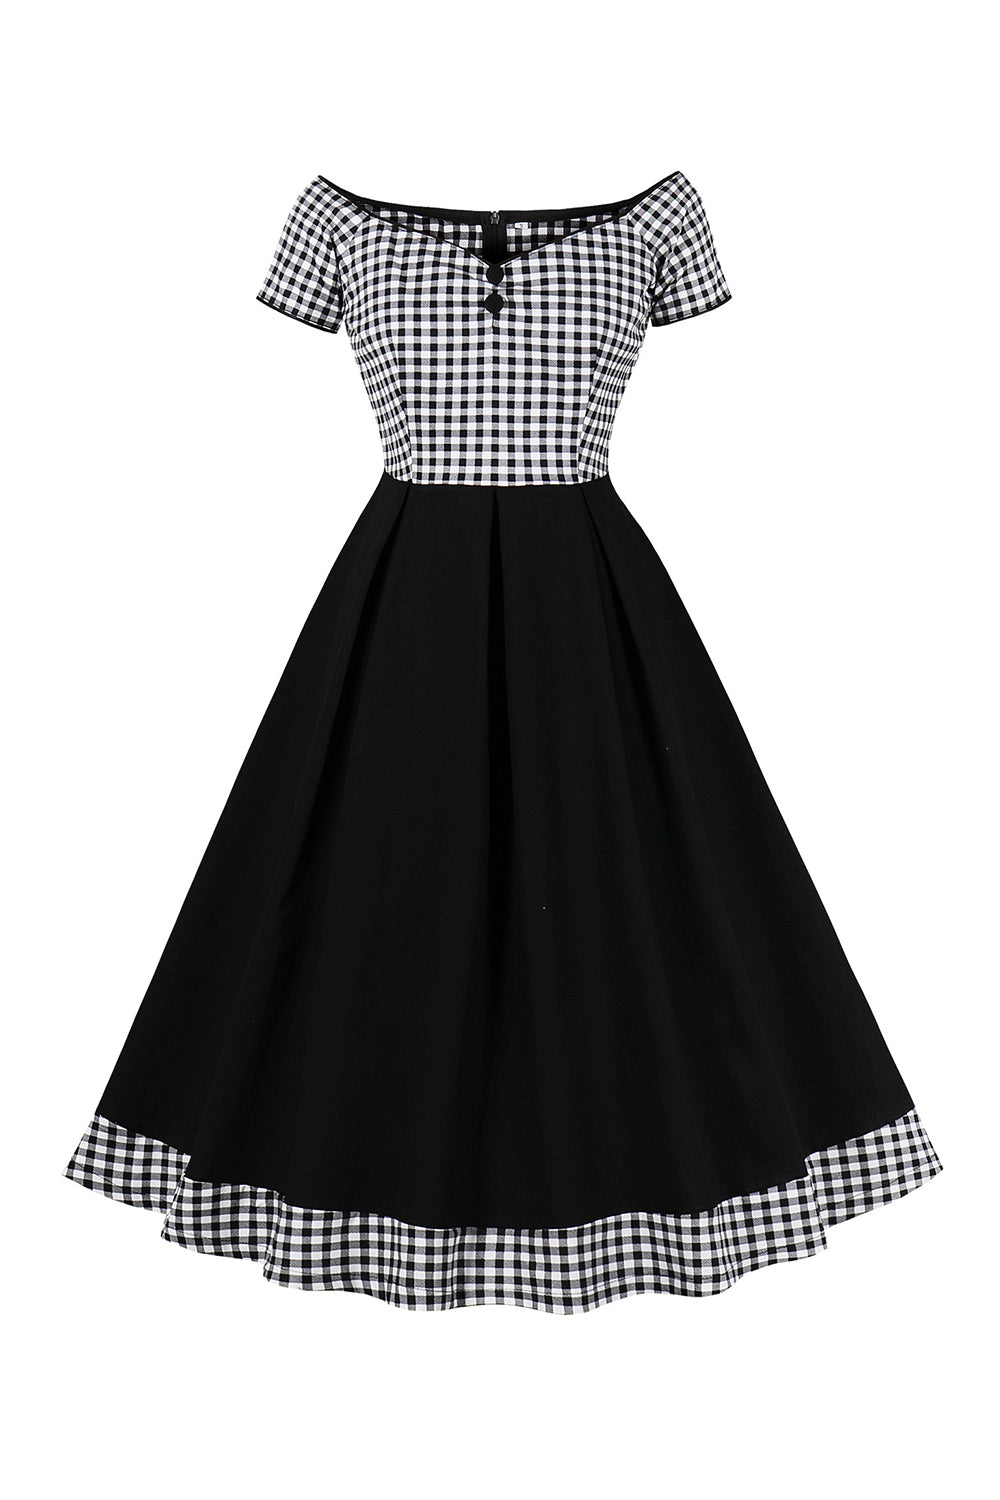 Black Plaid Off the Shoulder Vintage Dress With Short Sleeves